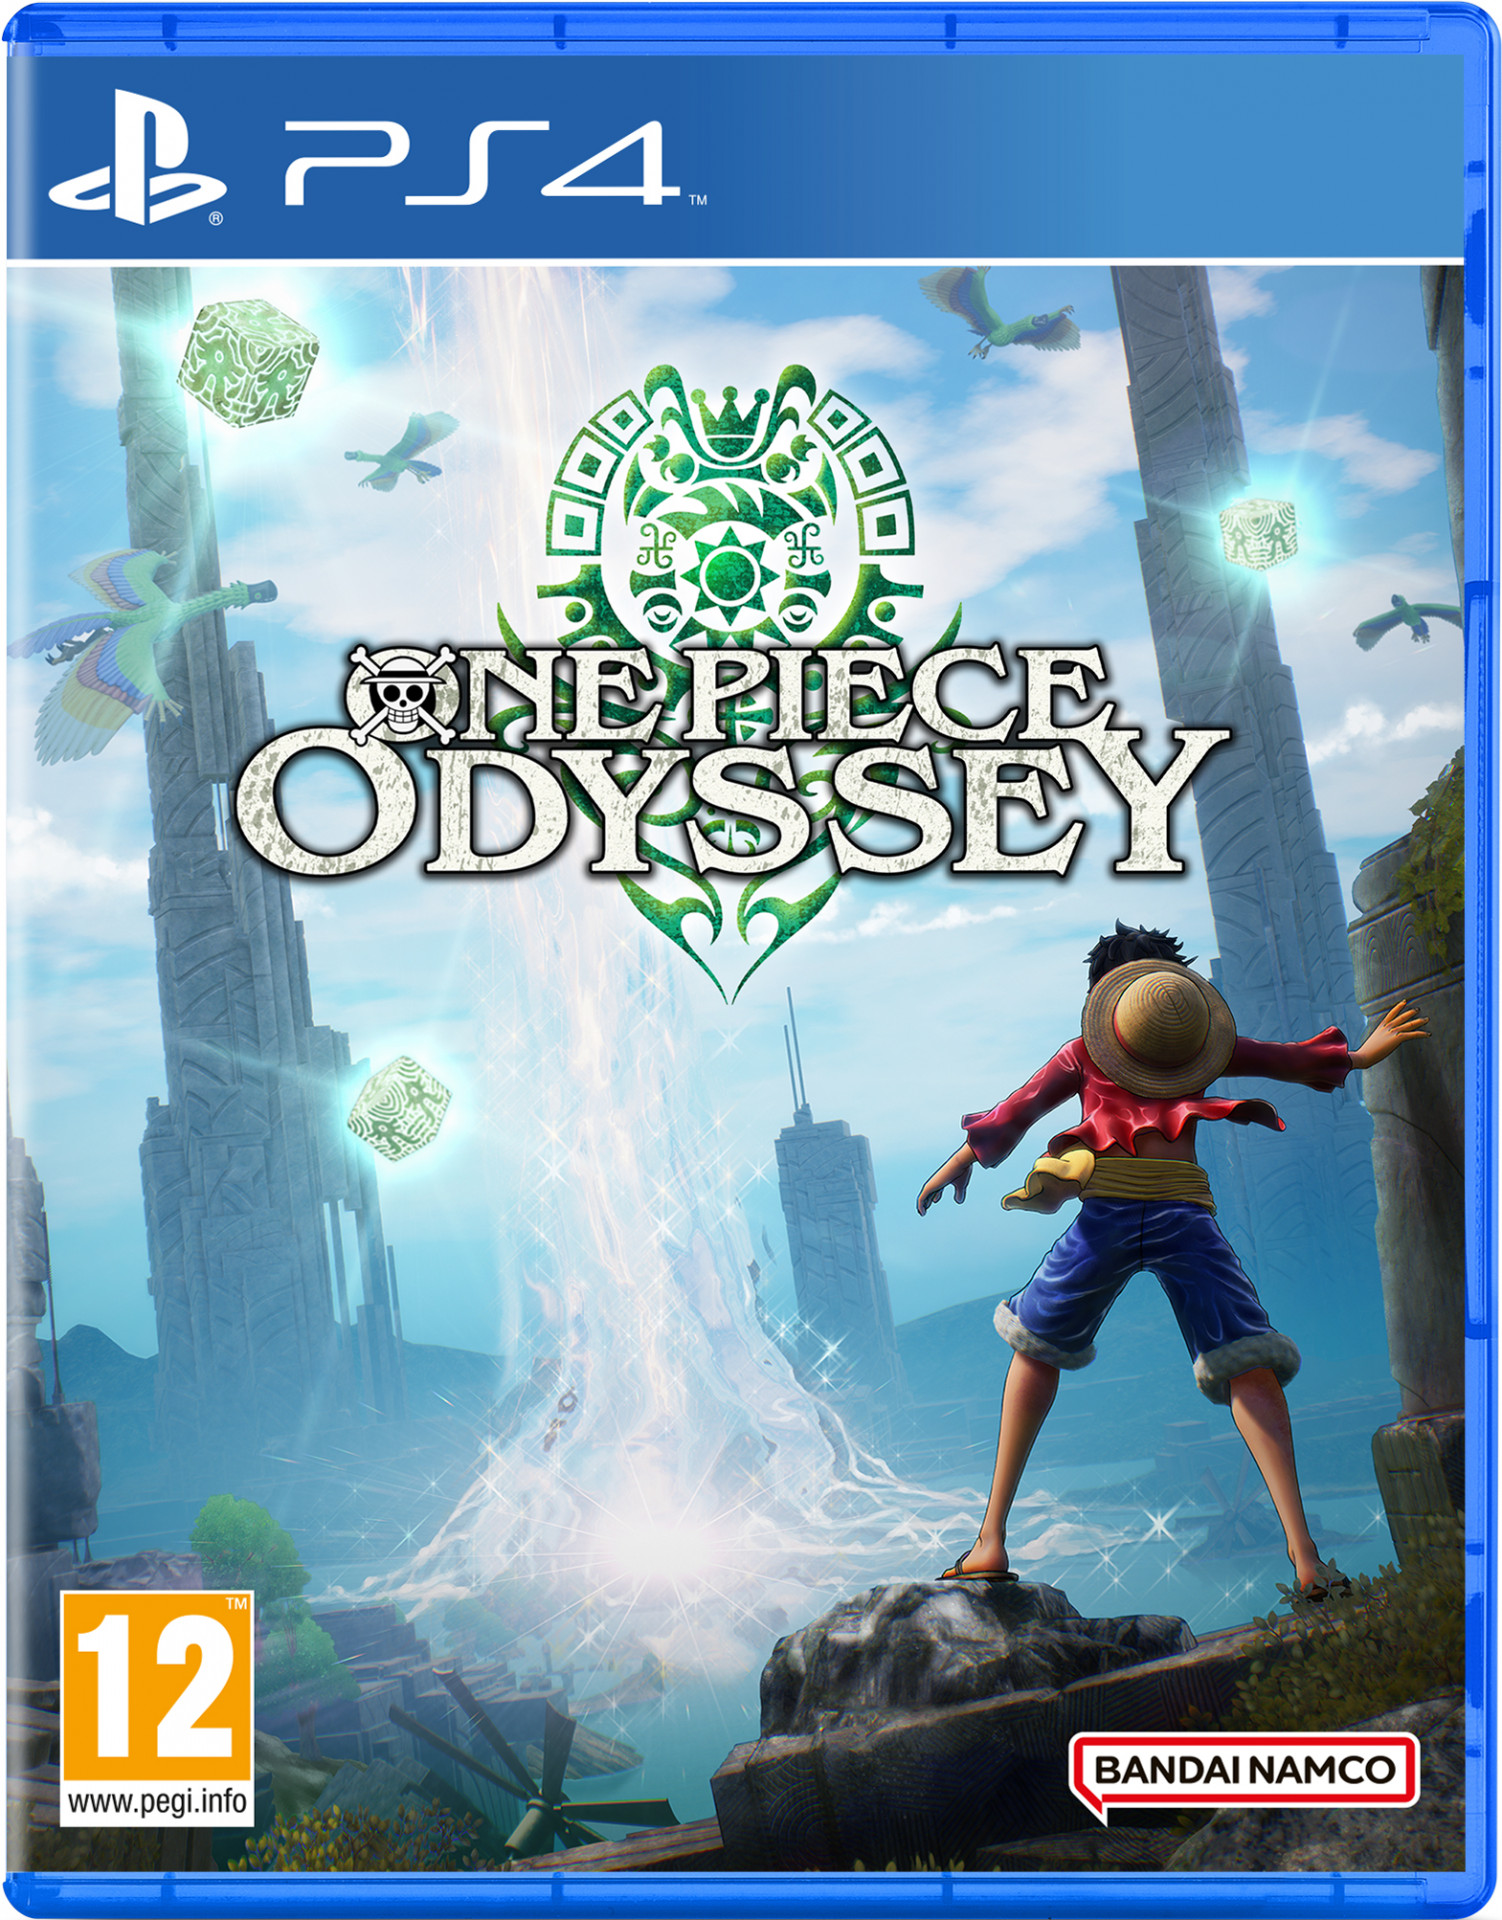 Jurassic Park Het formulier klei Nedgame gameshop: One Piece Odyssey (PlayStation 4) kopen